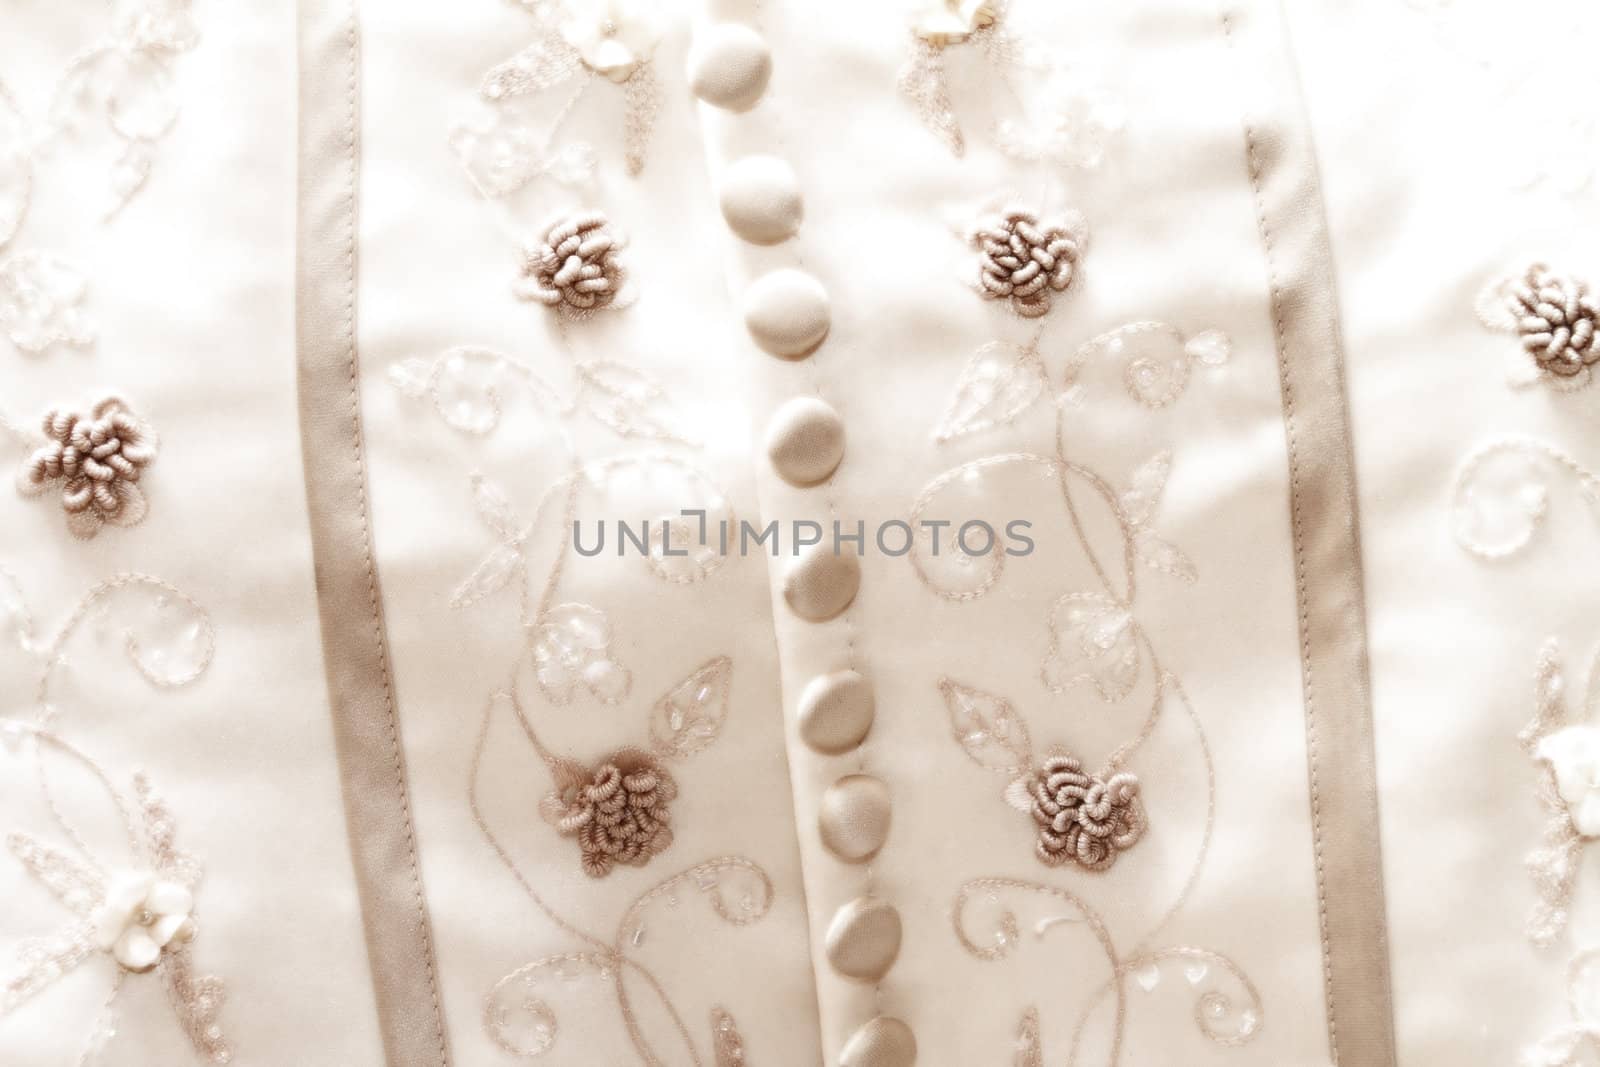 Sepia Toned Close-up of wedding dress details